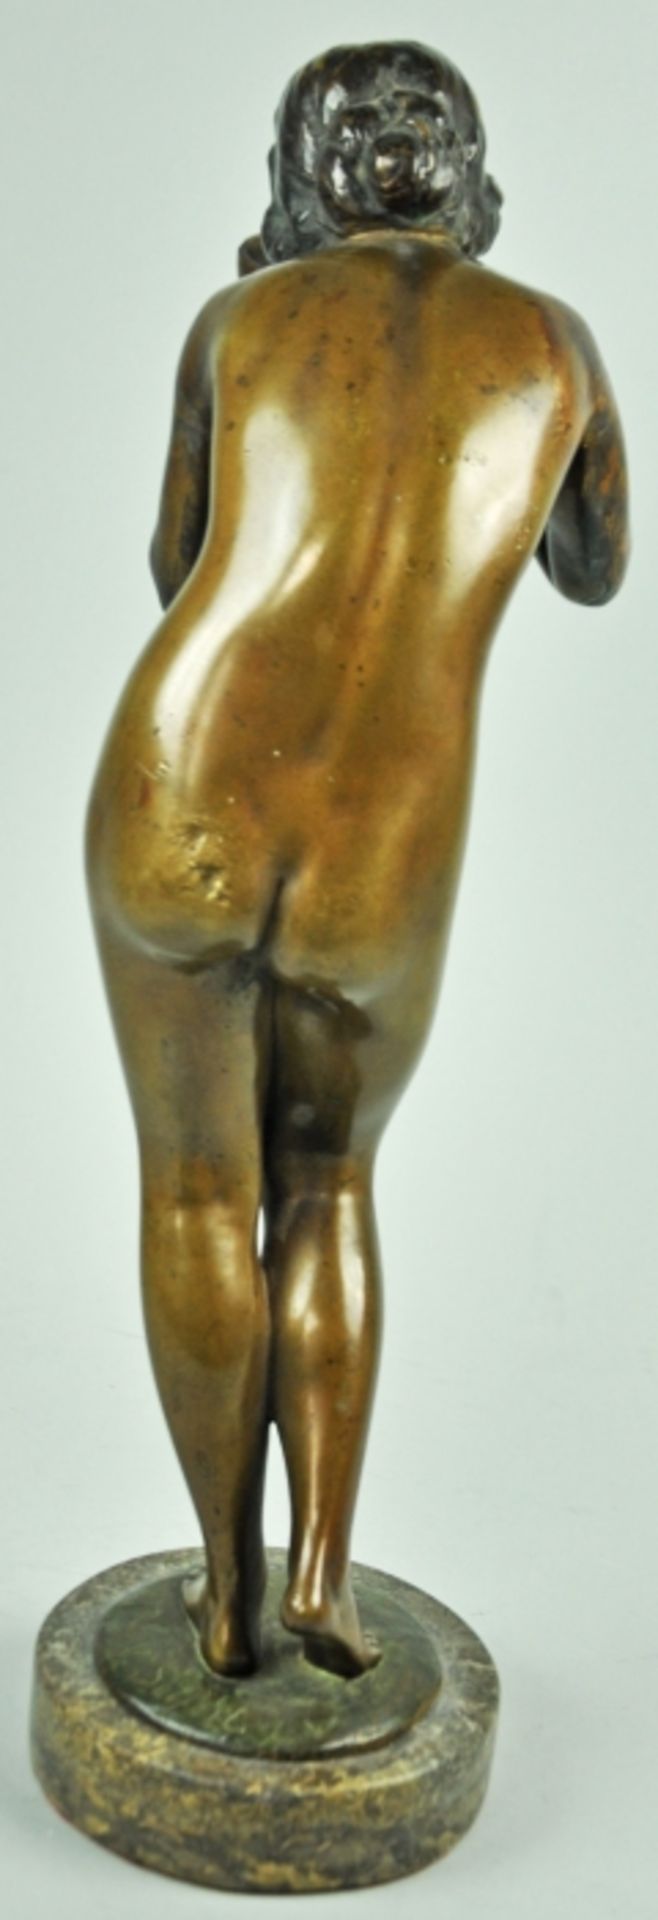 BRONZESKULPTUR "Die Trinkende", braun patinierte Bronzestatue auf rundem Marmorsockel, schwarze - Image 3 of 3